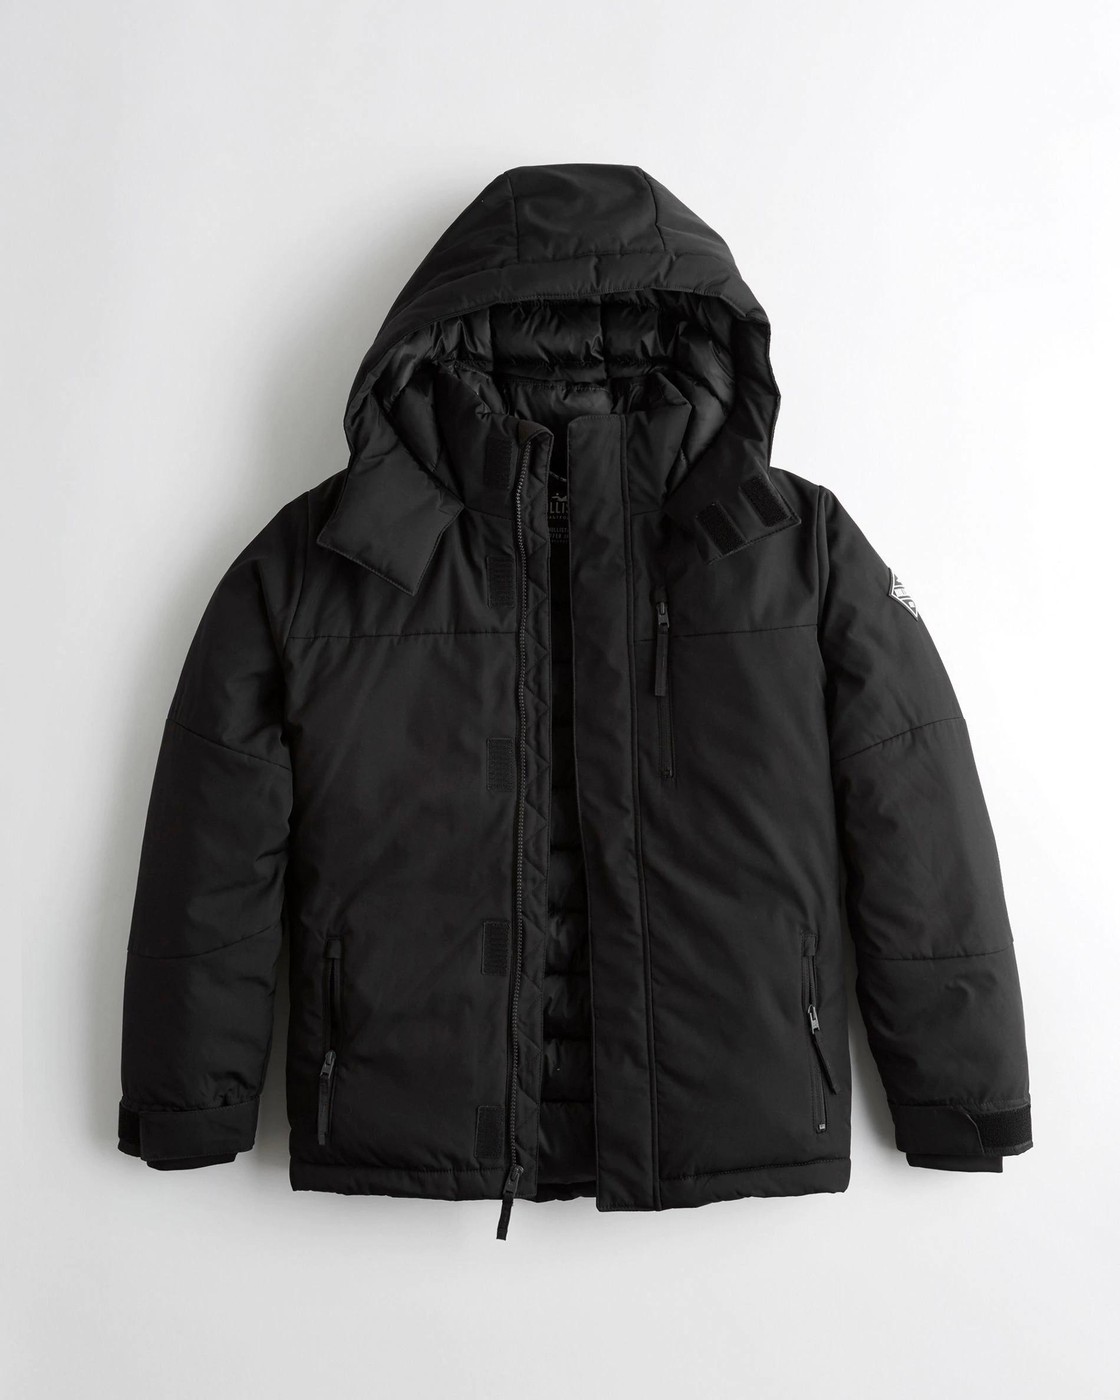 Куртка зимняя - мужская куртка Hollister, L, L